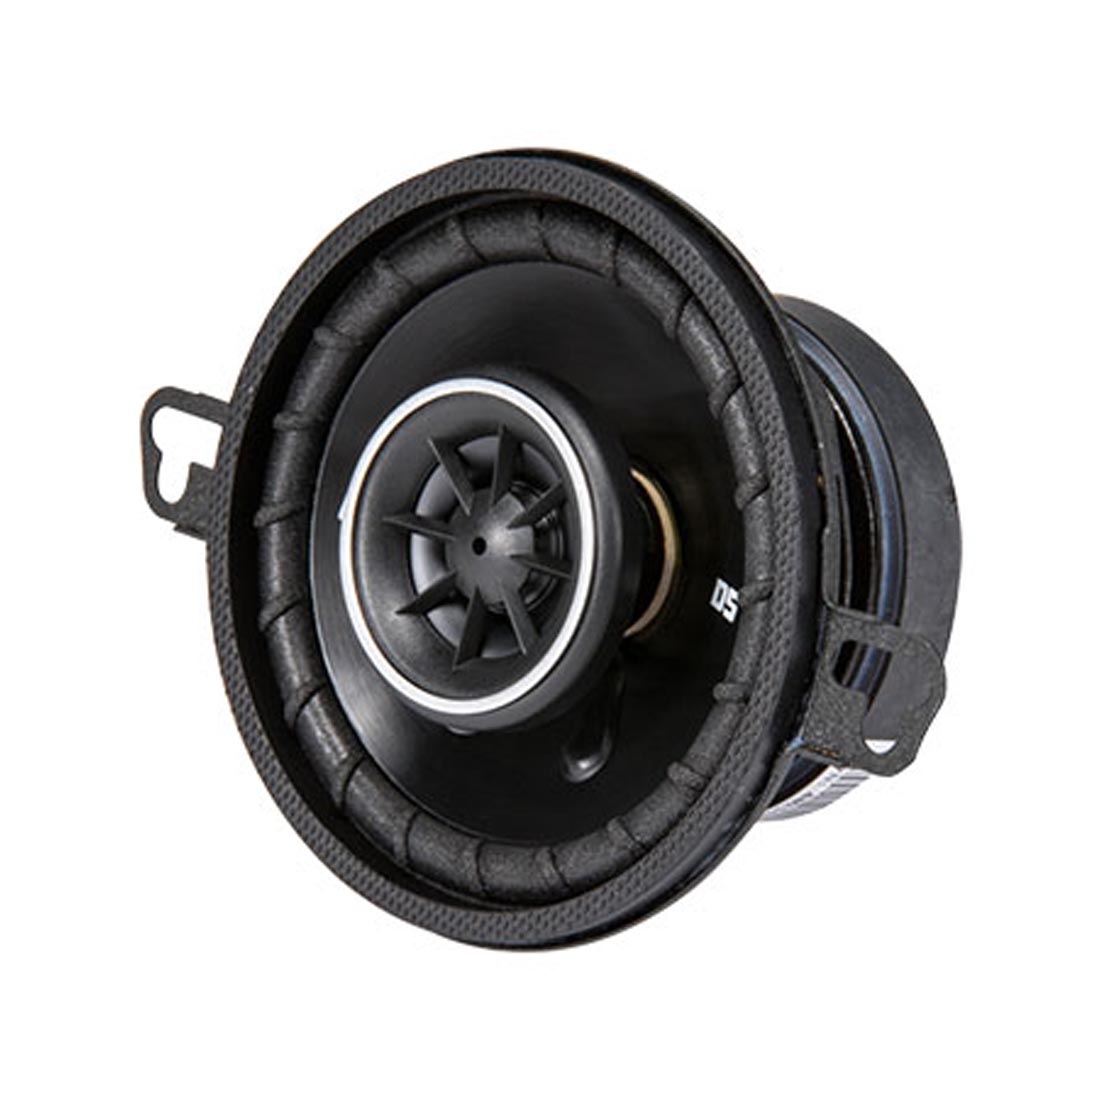 Kicker 43DSC3504 DS Series 3.5" 2-Way Coaxial Car Speakers